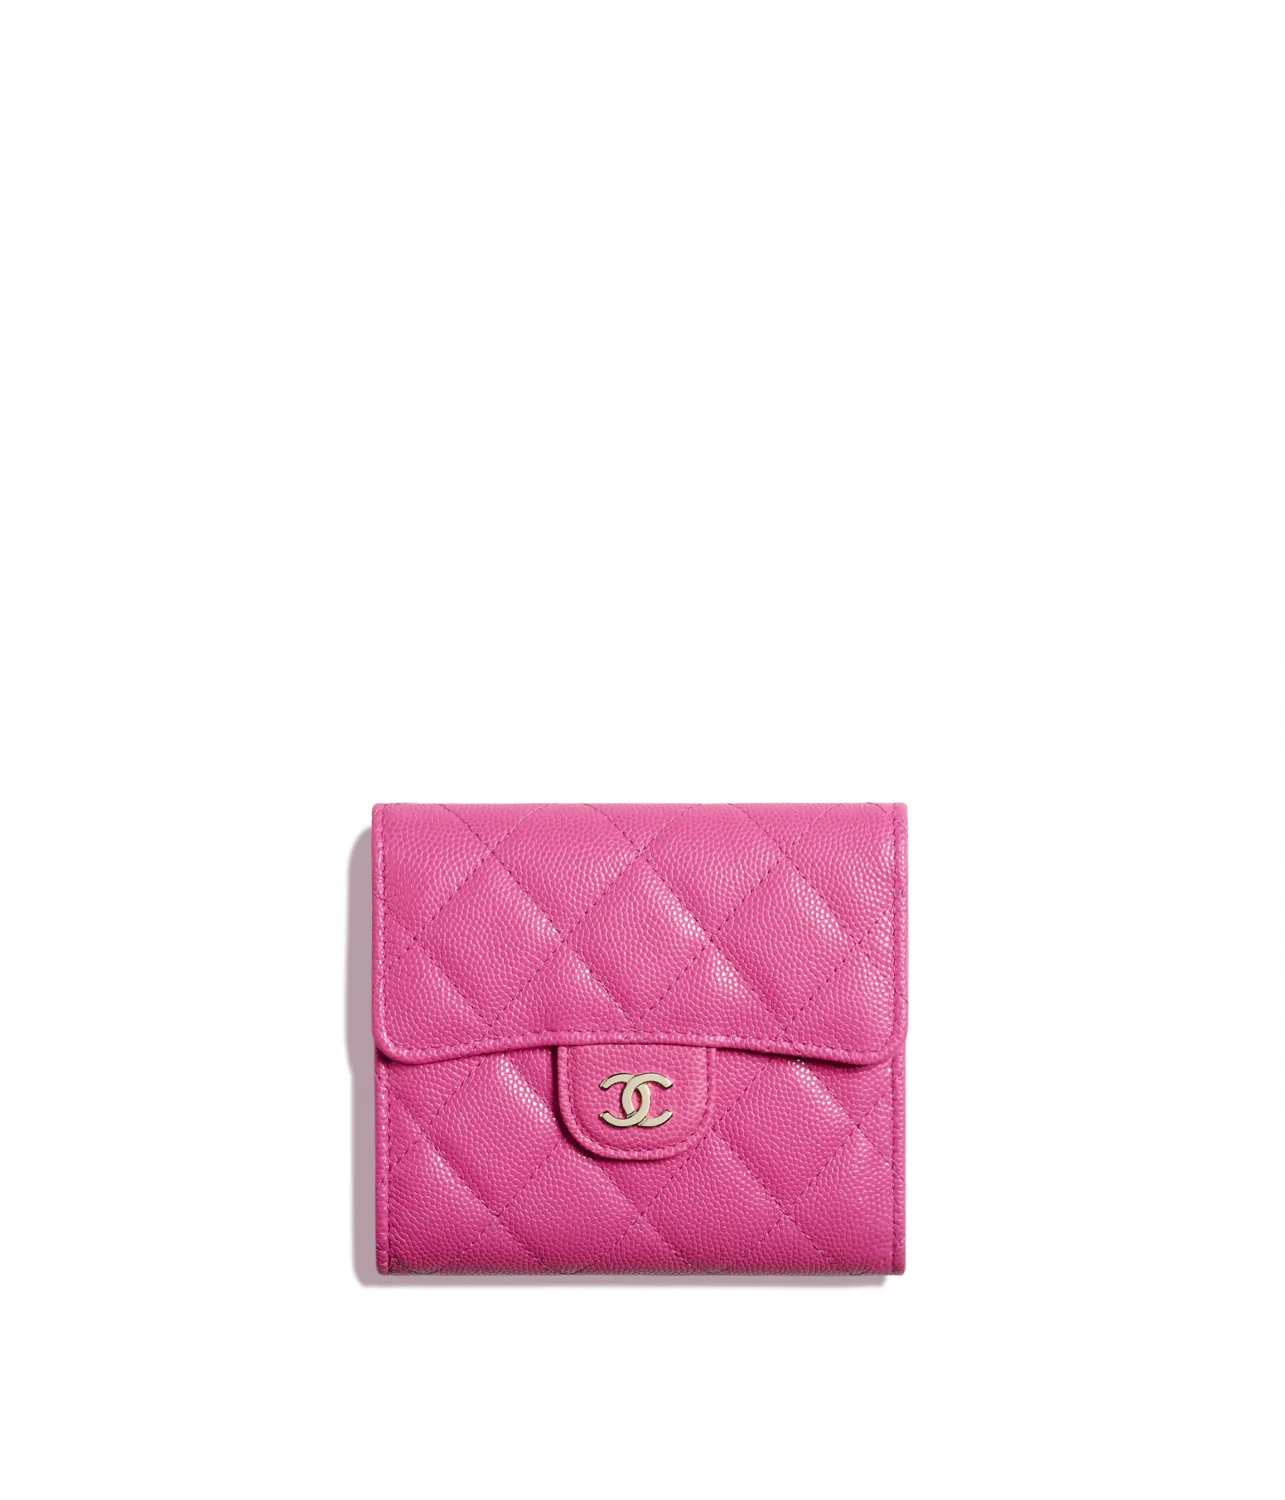 Блогер-кожевенник разрезал кошелек Chanel за 570 тысяч тенге, чтобы узнать его себестоимость